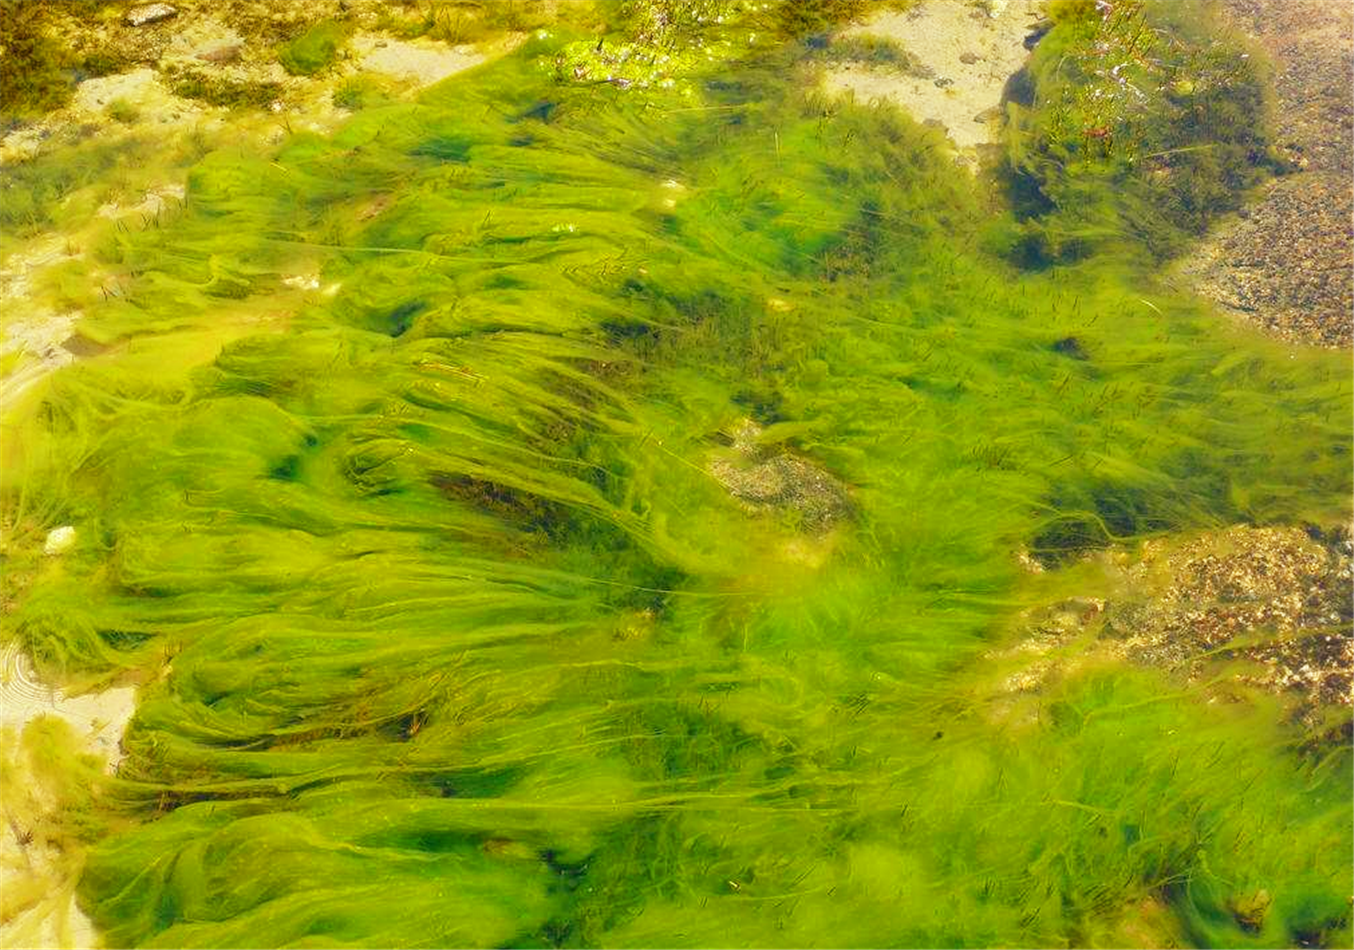 【藻类植物:原生生物界一类真核生物,主要水生,无维管束,能进行光合